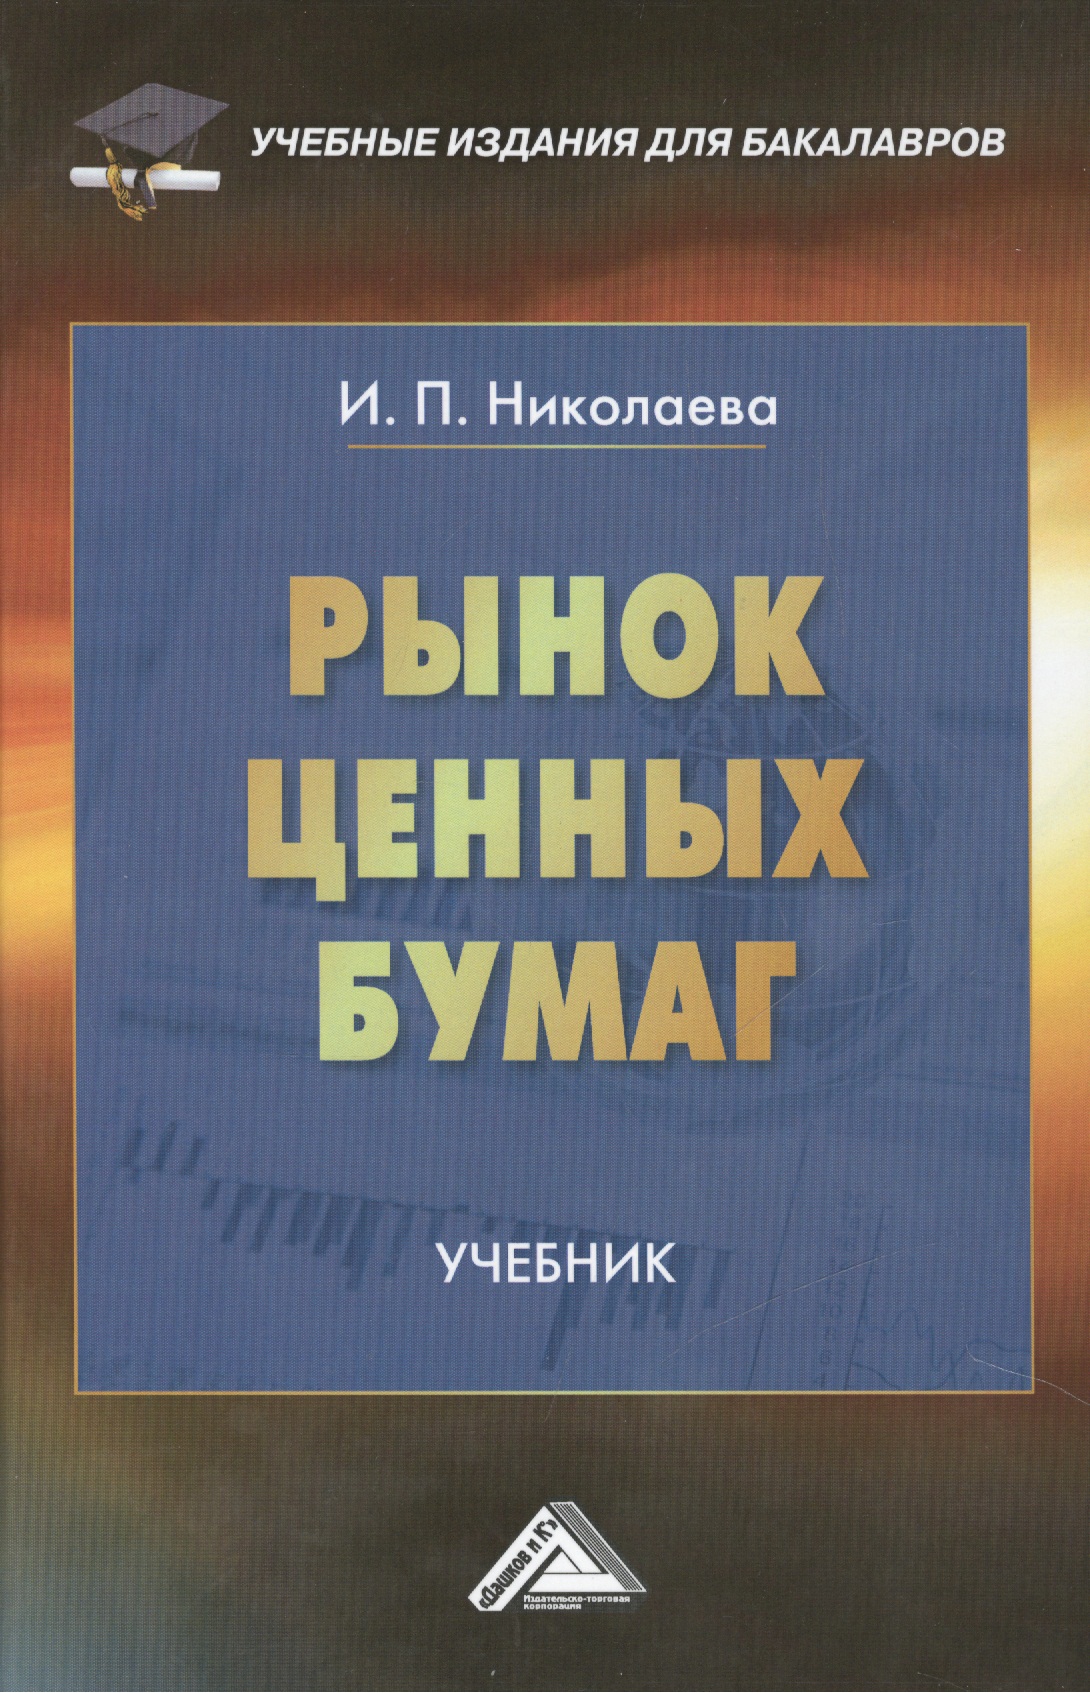 Николаева Ирина Павловна - Рынок ценных бумаг: Учебник для бакалавров